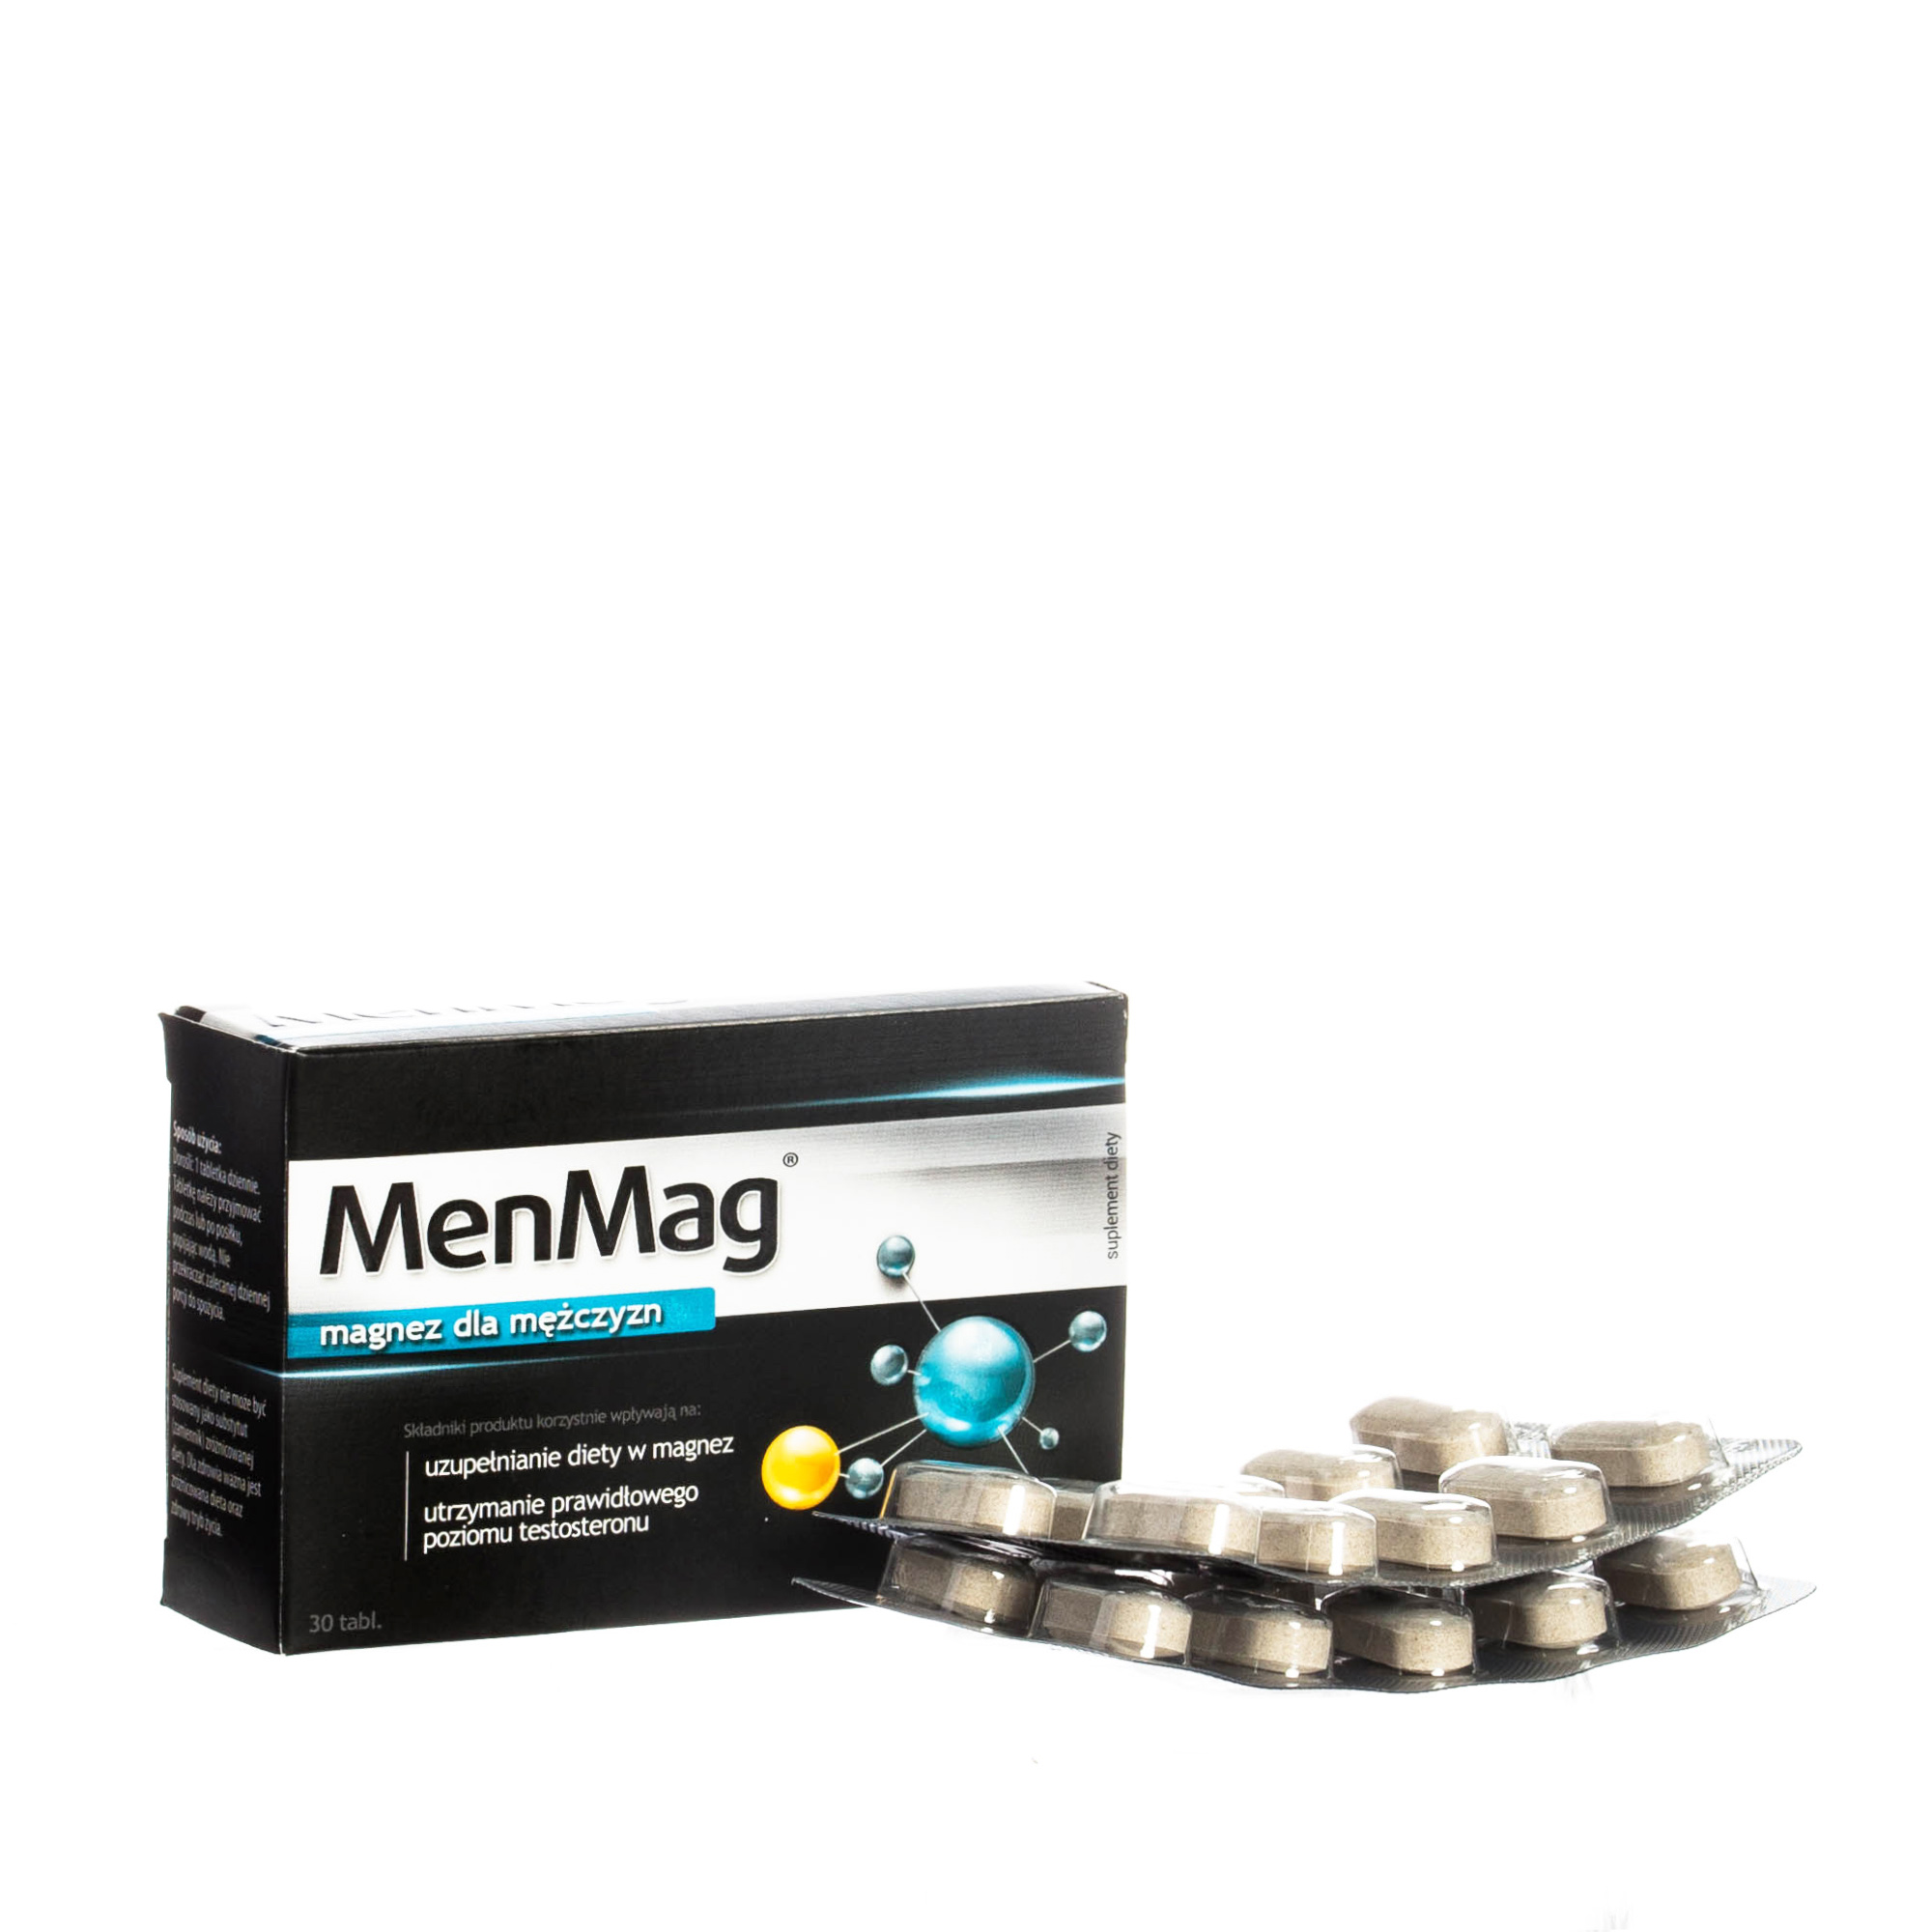 Aflofarm MenMAG, magnez dla mężczyzn, 30 tabletek, 4628251